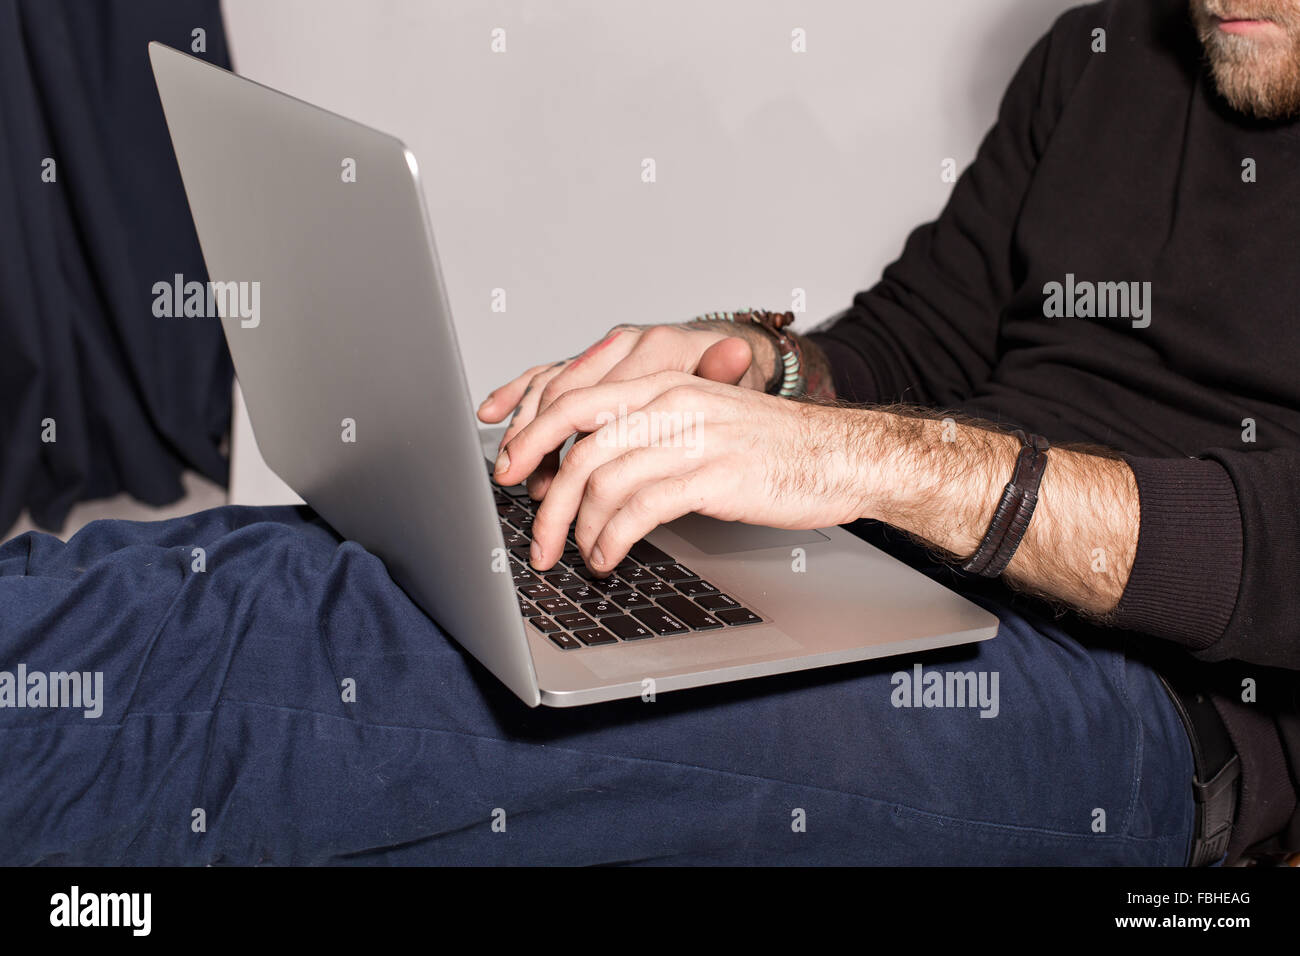 Jeune mec avec une barbe avec un ordinateur portable assis et regardant le moniteur Banque D'Images